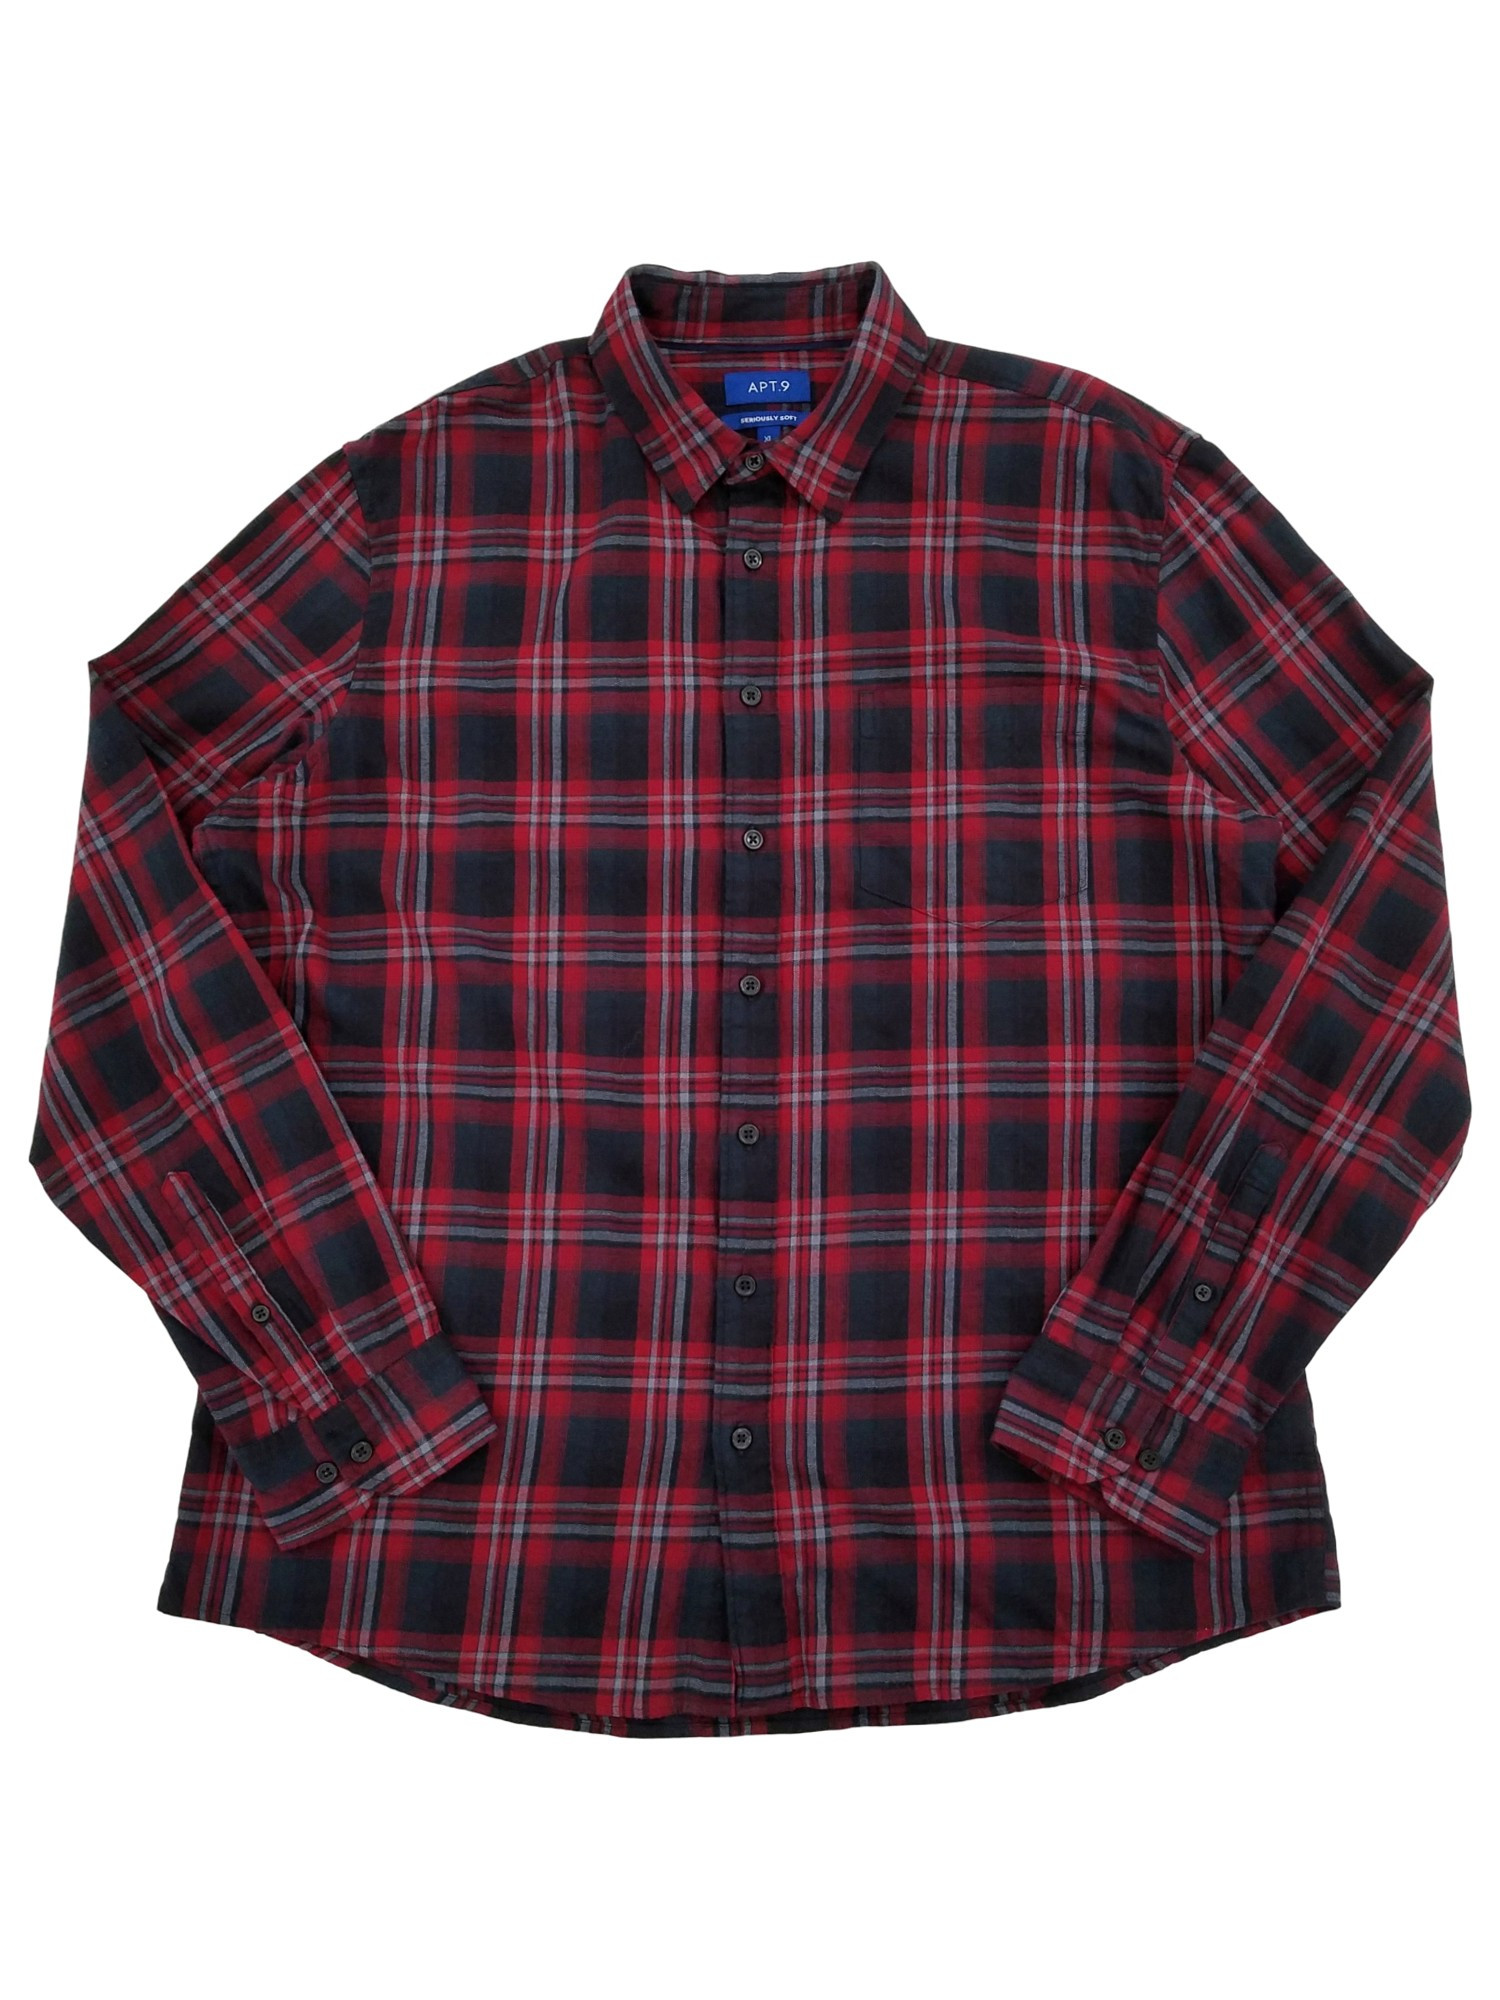 Apt. 9 Mens Red Black & Gray Plaid Long Sleeve Flannel Shirt